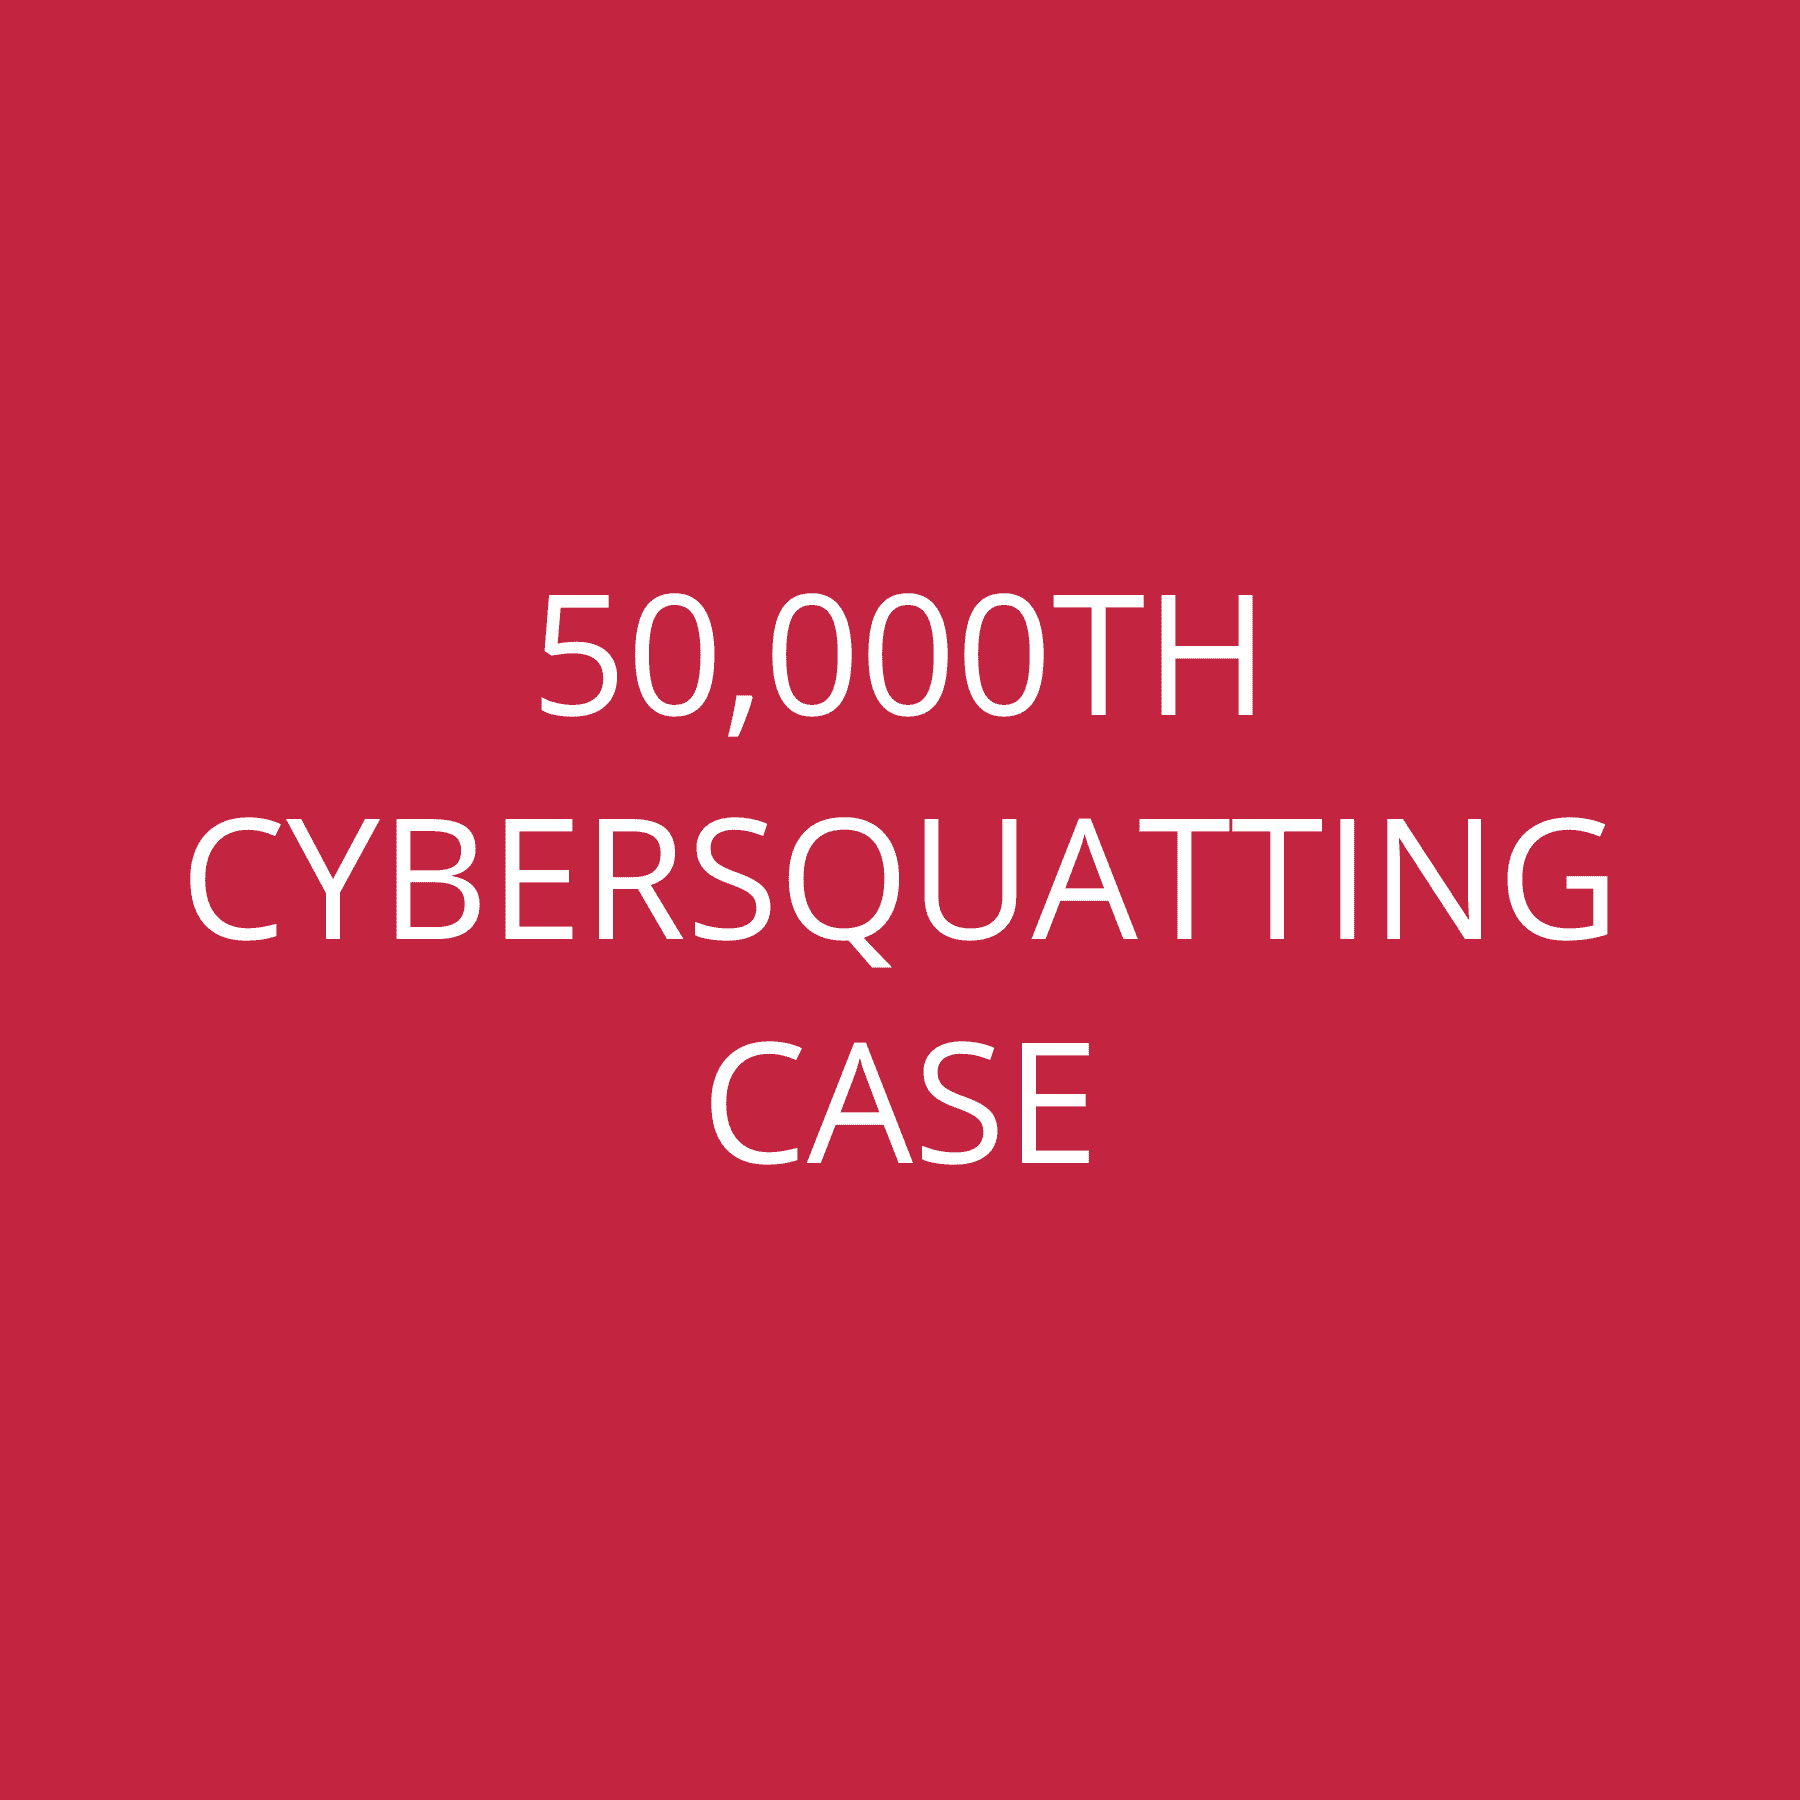 50,000th Cybersquatting Case